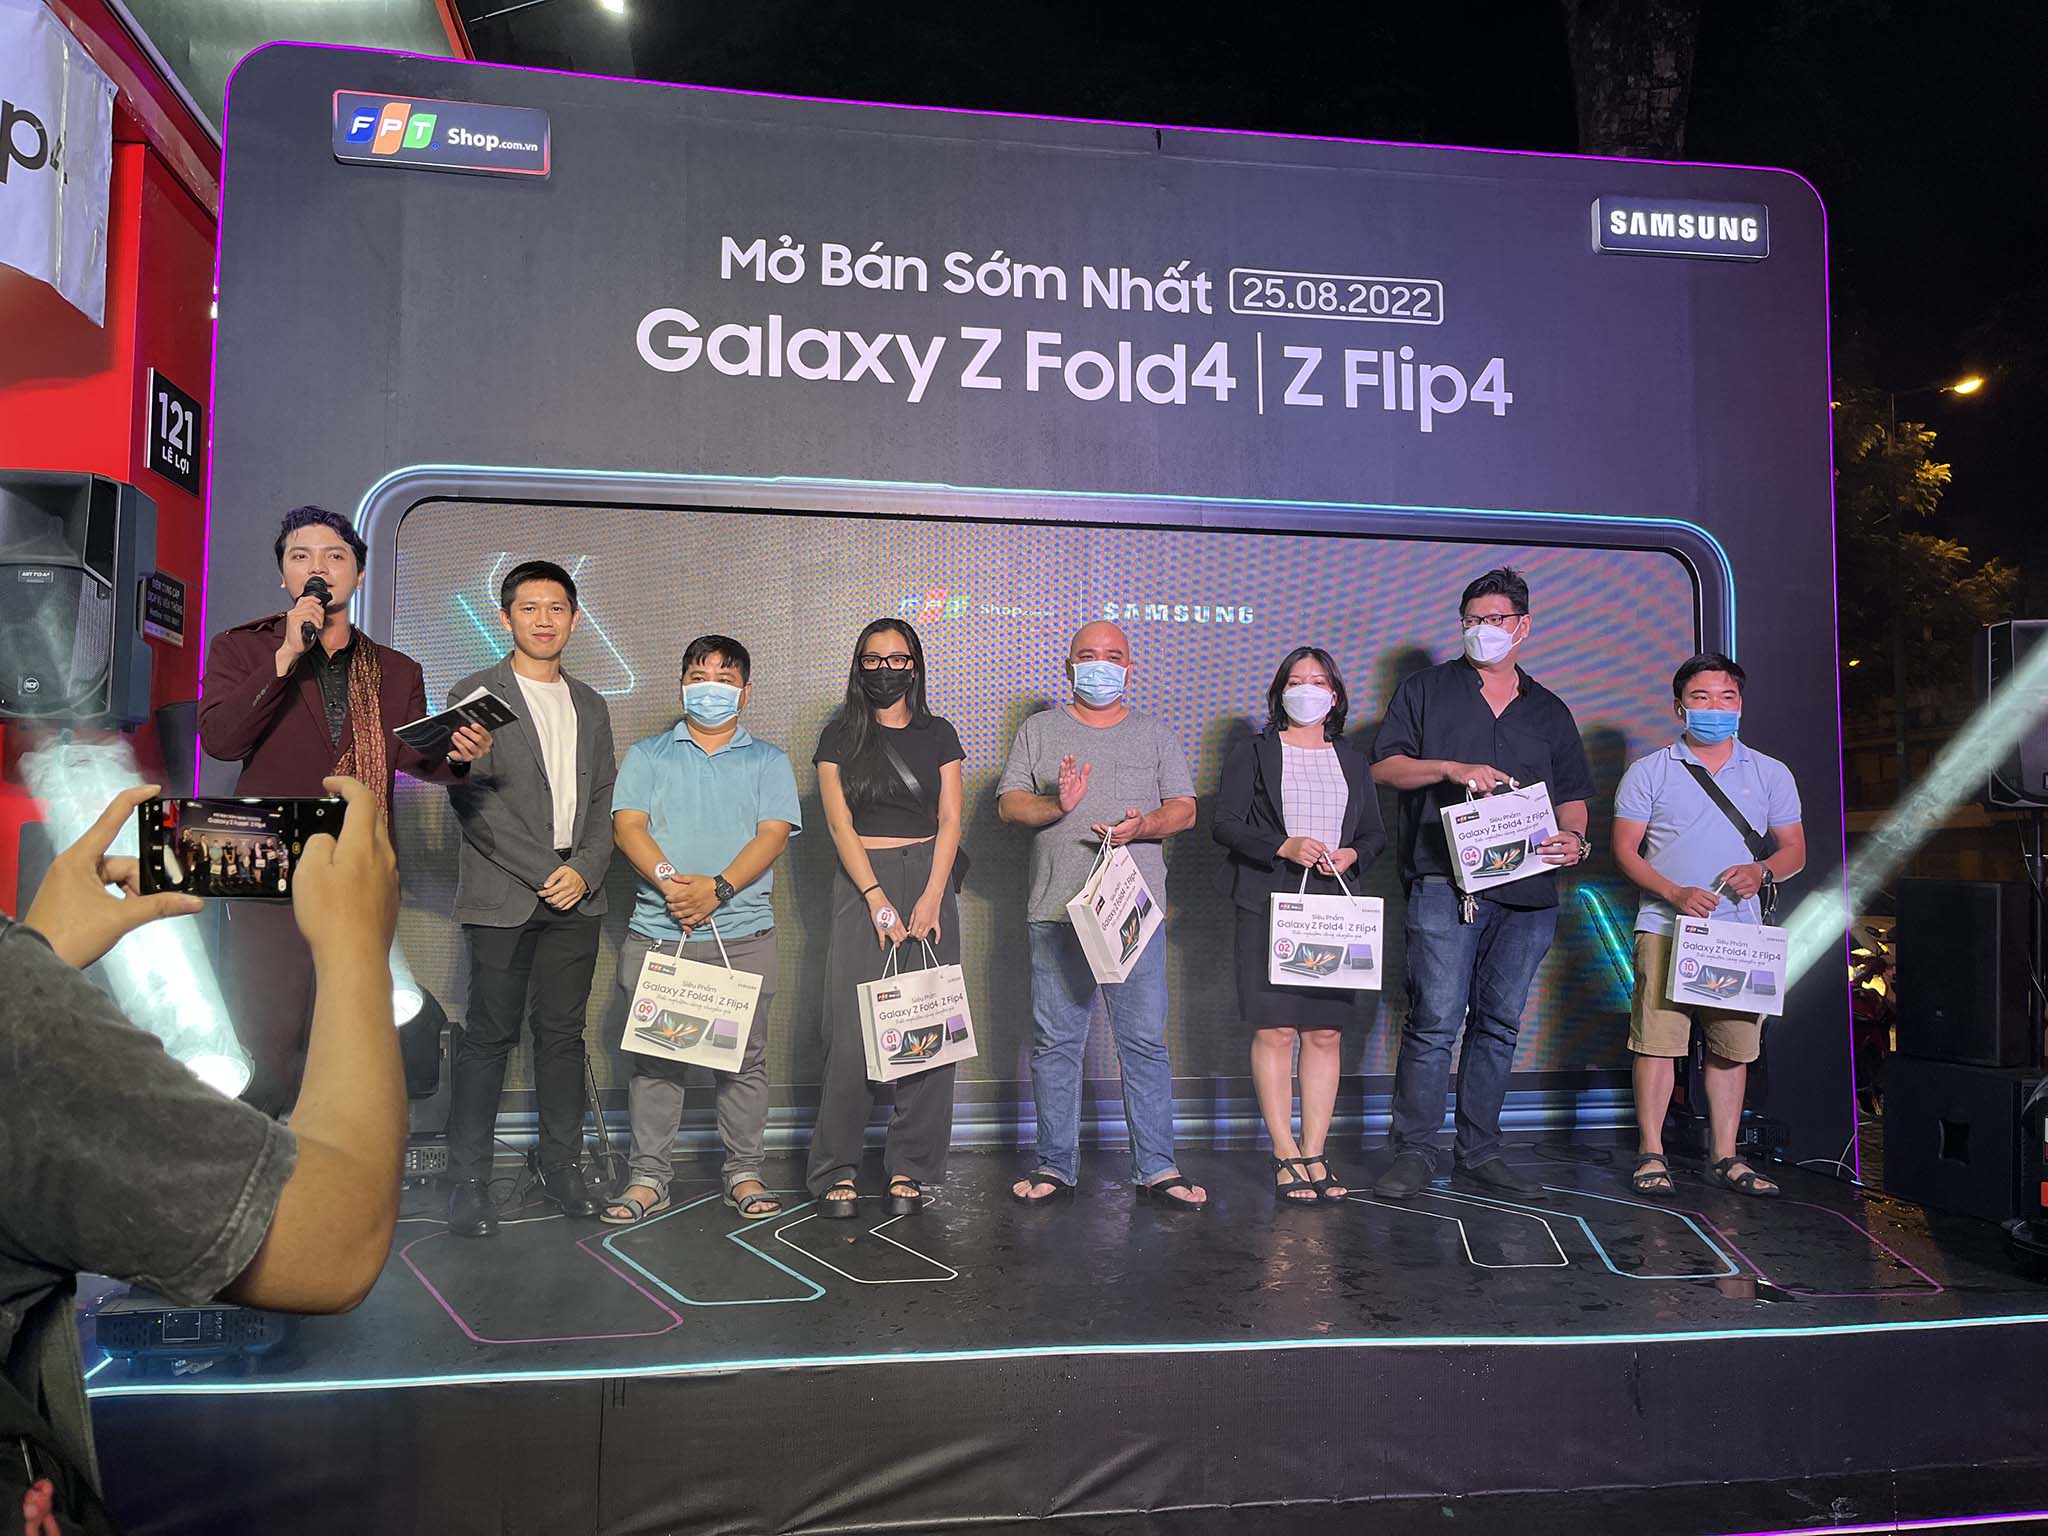 FPT Shop mở bán Galaxy Z Fold4 | Z Flip4 sớm nhất tại Việt Nam